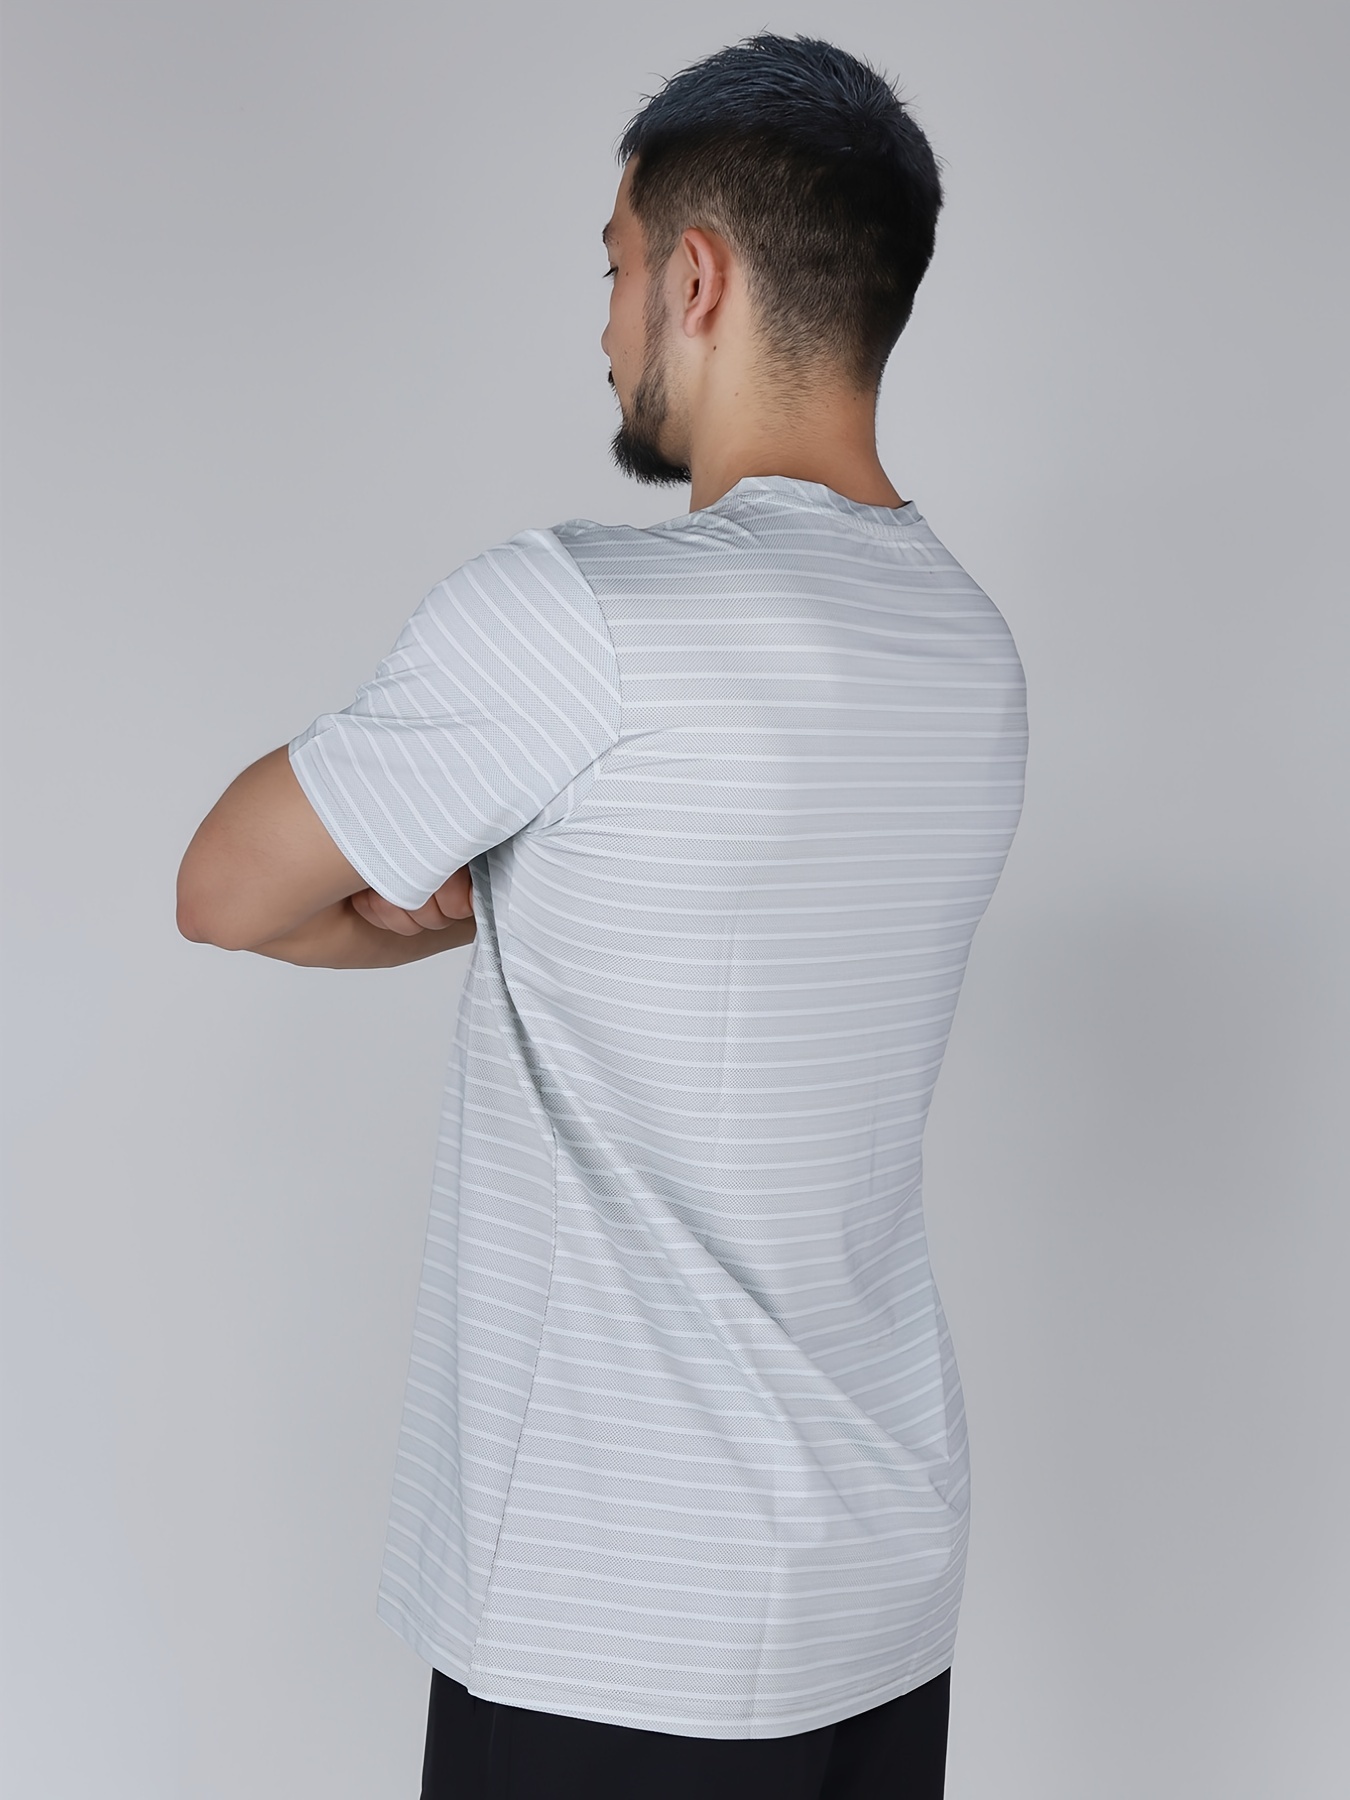 Nike Dri-fit Baseball T-shirt in White for Men